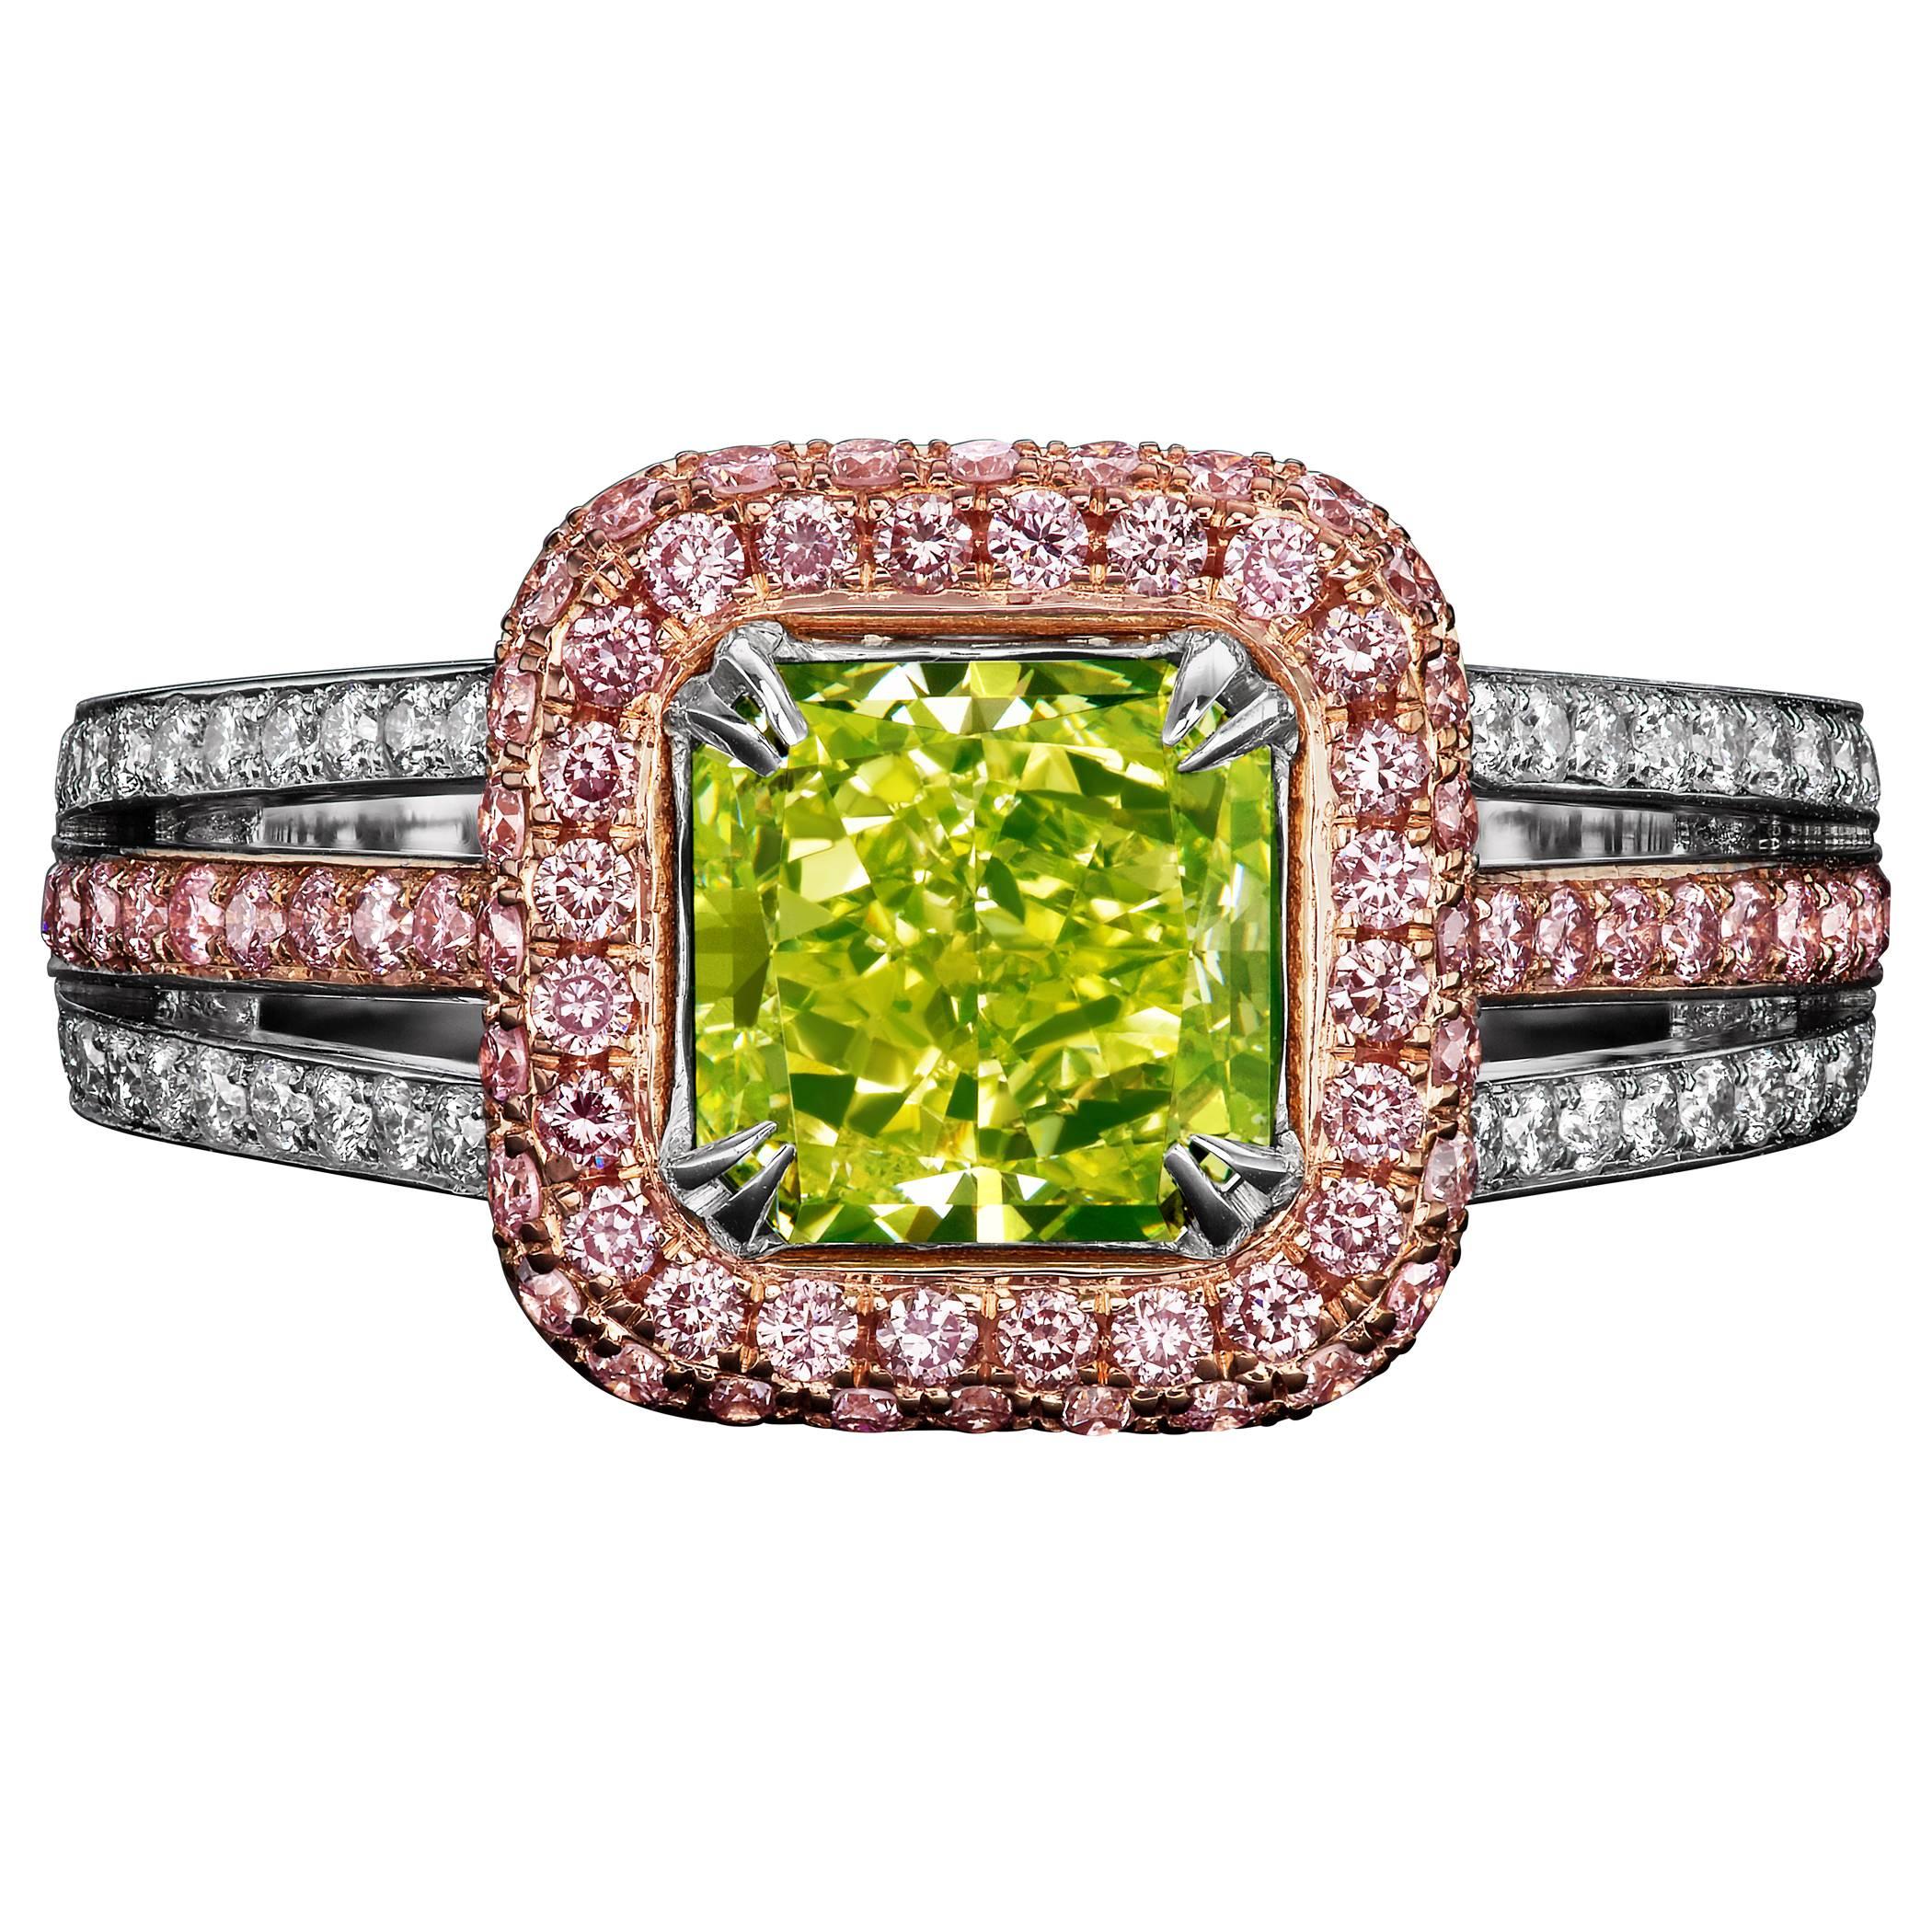 David Rosenberg 1.77 Carat Radiant Fancy Intense Yellow Green GIA Diamond Ring